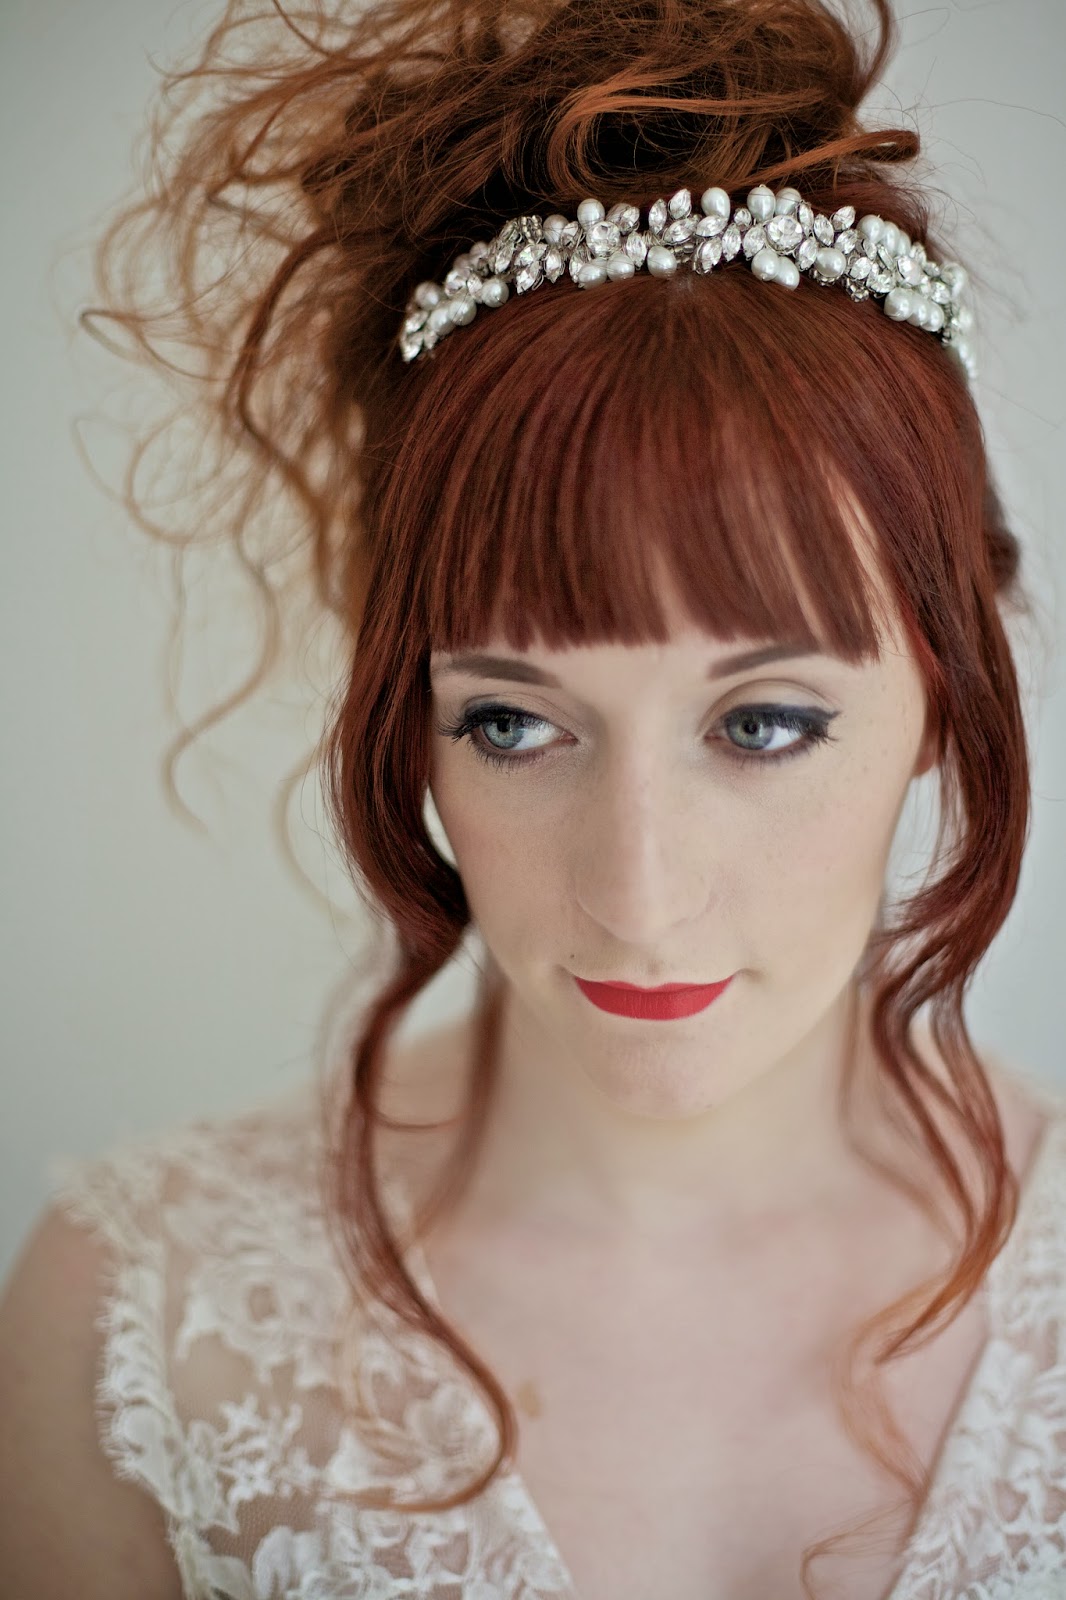 Full bridal headband vintage pearl and rhinestone leaf style 2014 trend